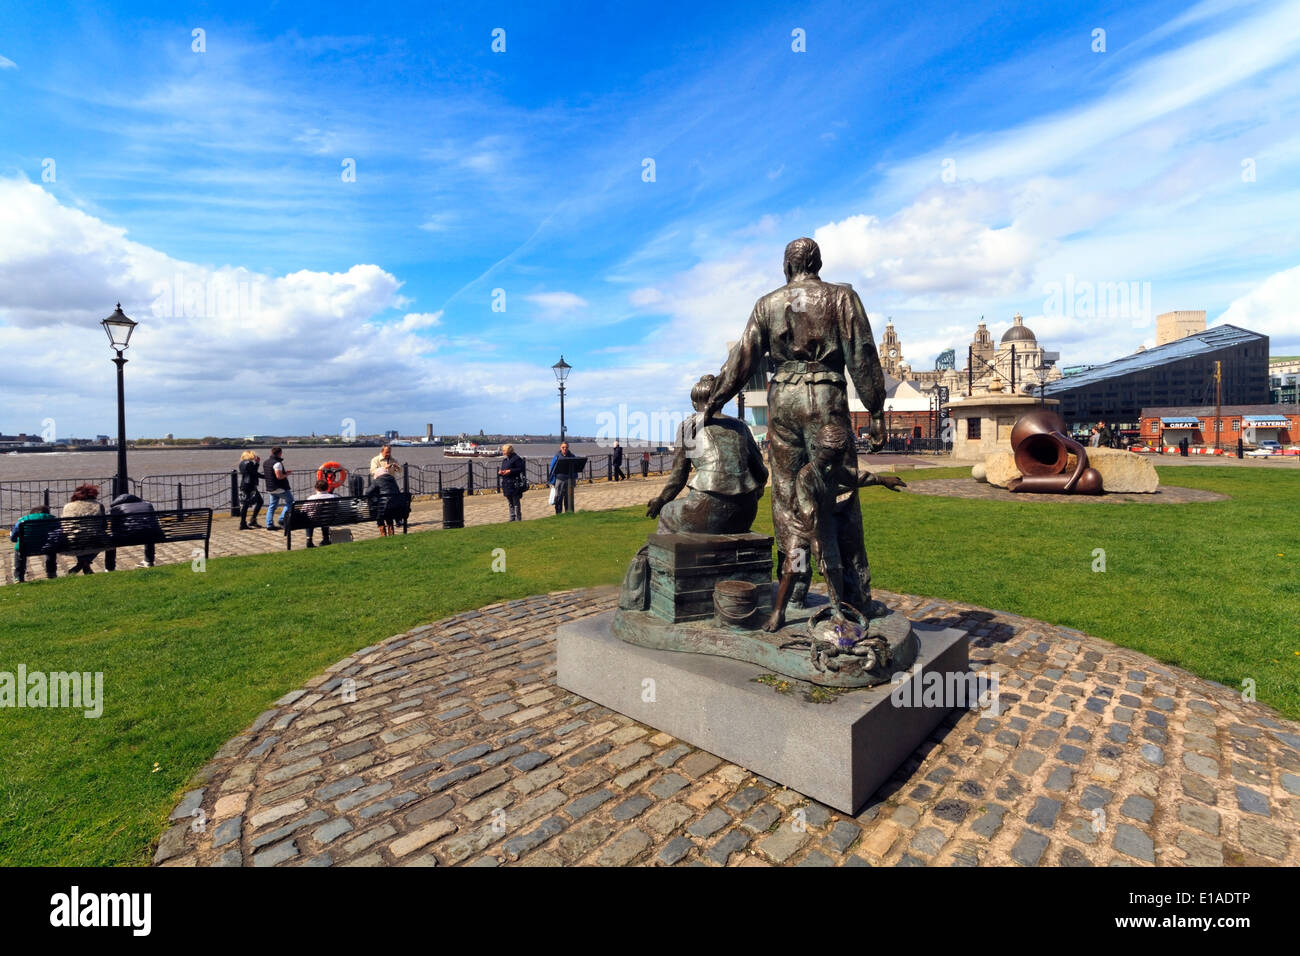 Les émigrants statue à front de mer historique de Liverpool, l'Albert Dock, Liverpool, Angleterre. Banque D'Images